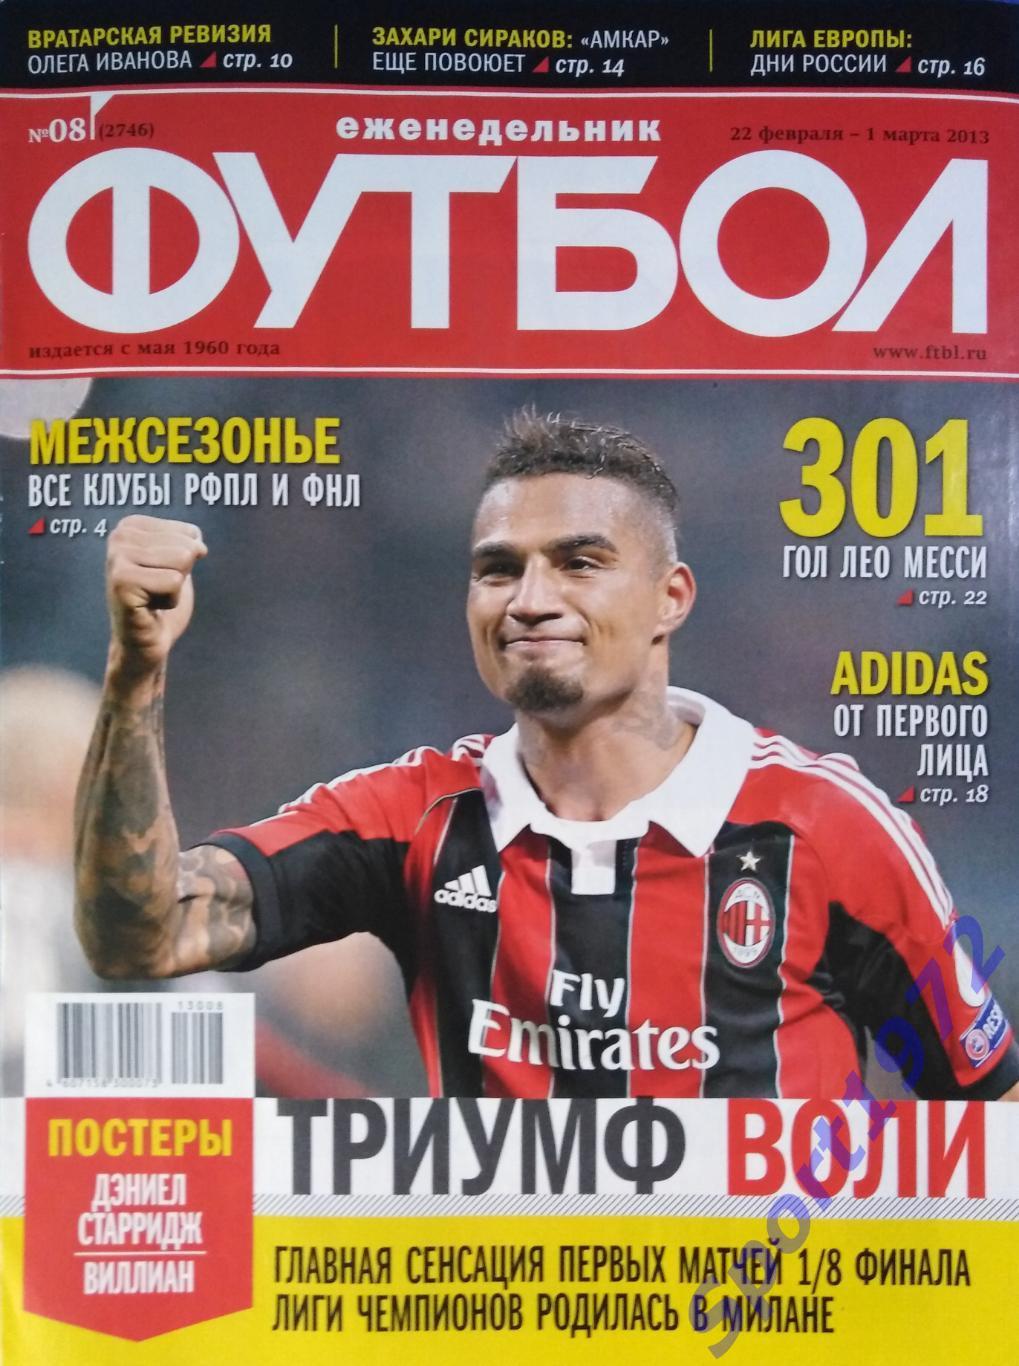 Еженедельник Футбол. №8 - 2013.